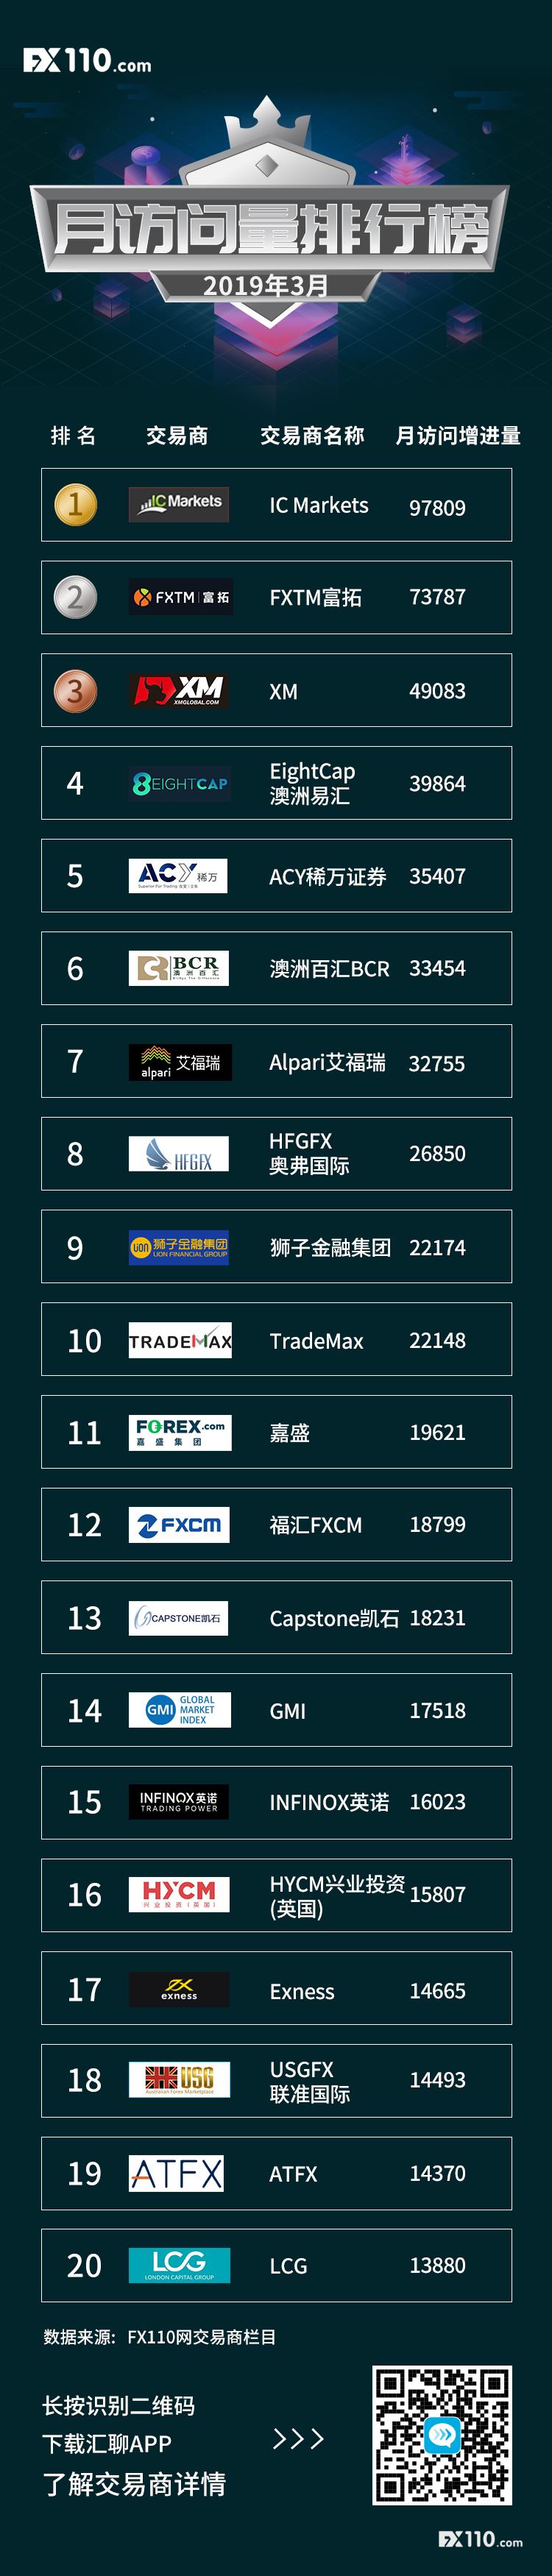 【榜单】2019年3月交易商访问量排行榜